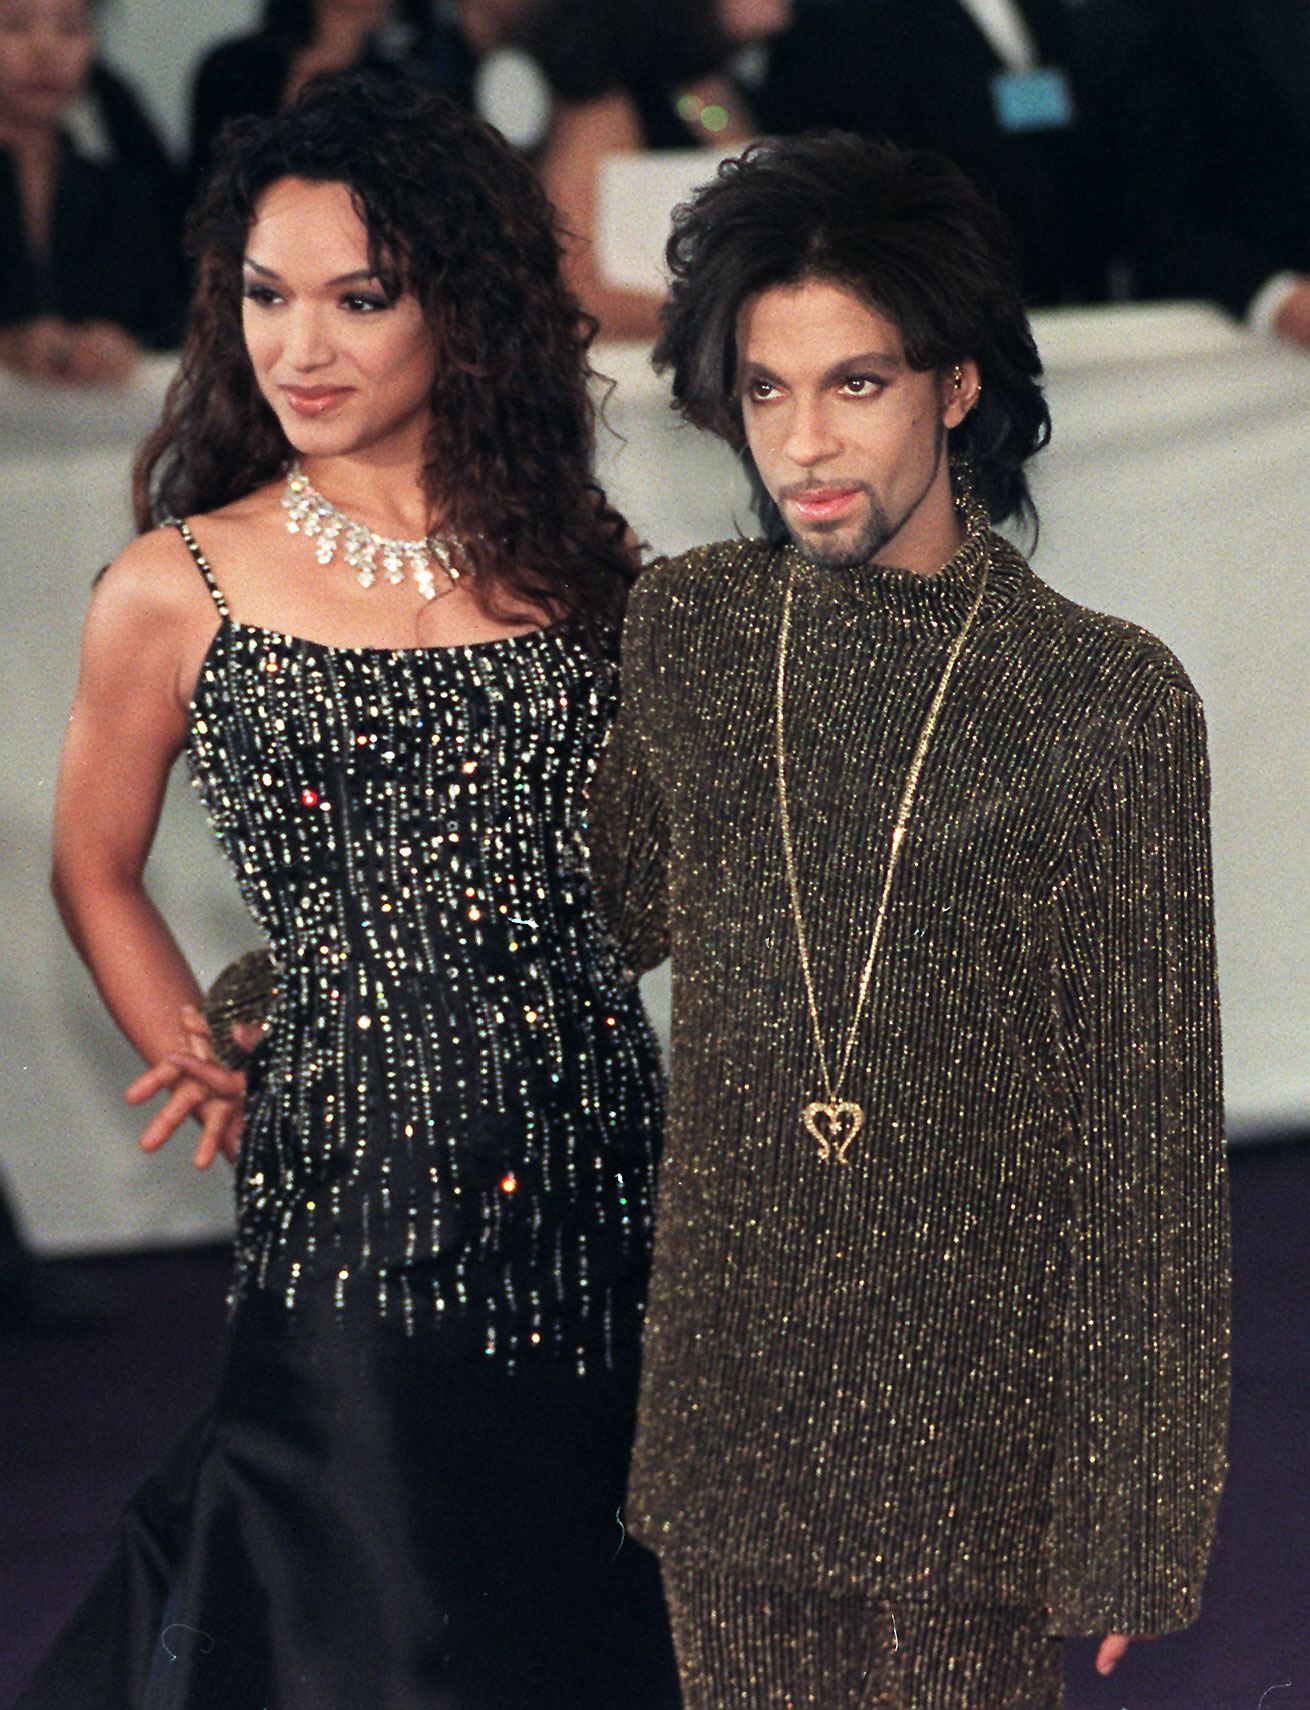 Prince y Mayte Garcia durante el evento de moda benéfico "Diamonds are forever" de De Beer y Versace el 09 de junio de 1999. | Foto: Getty Images